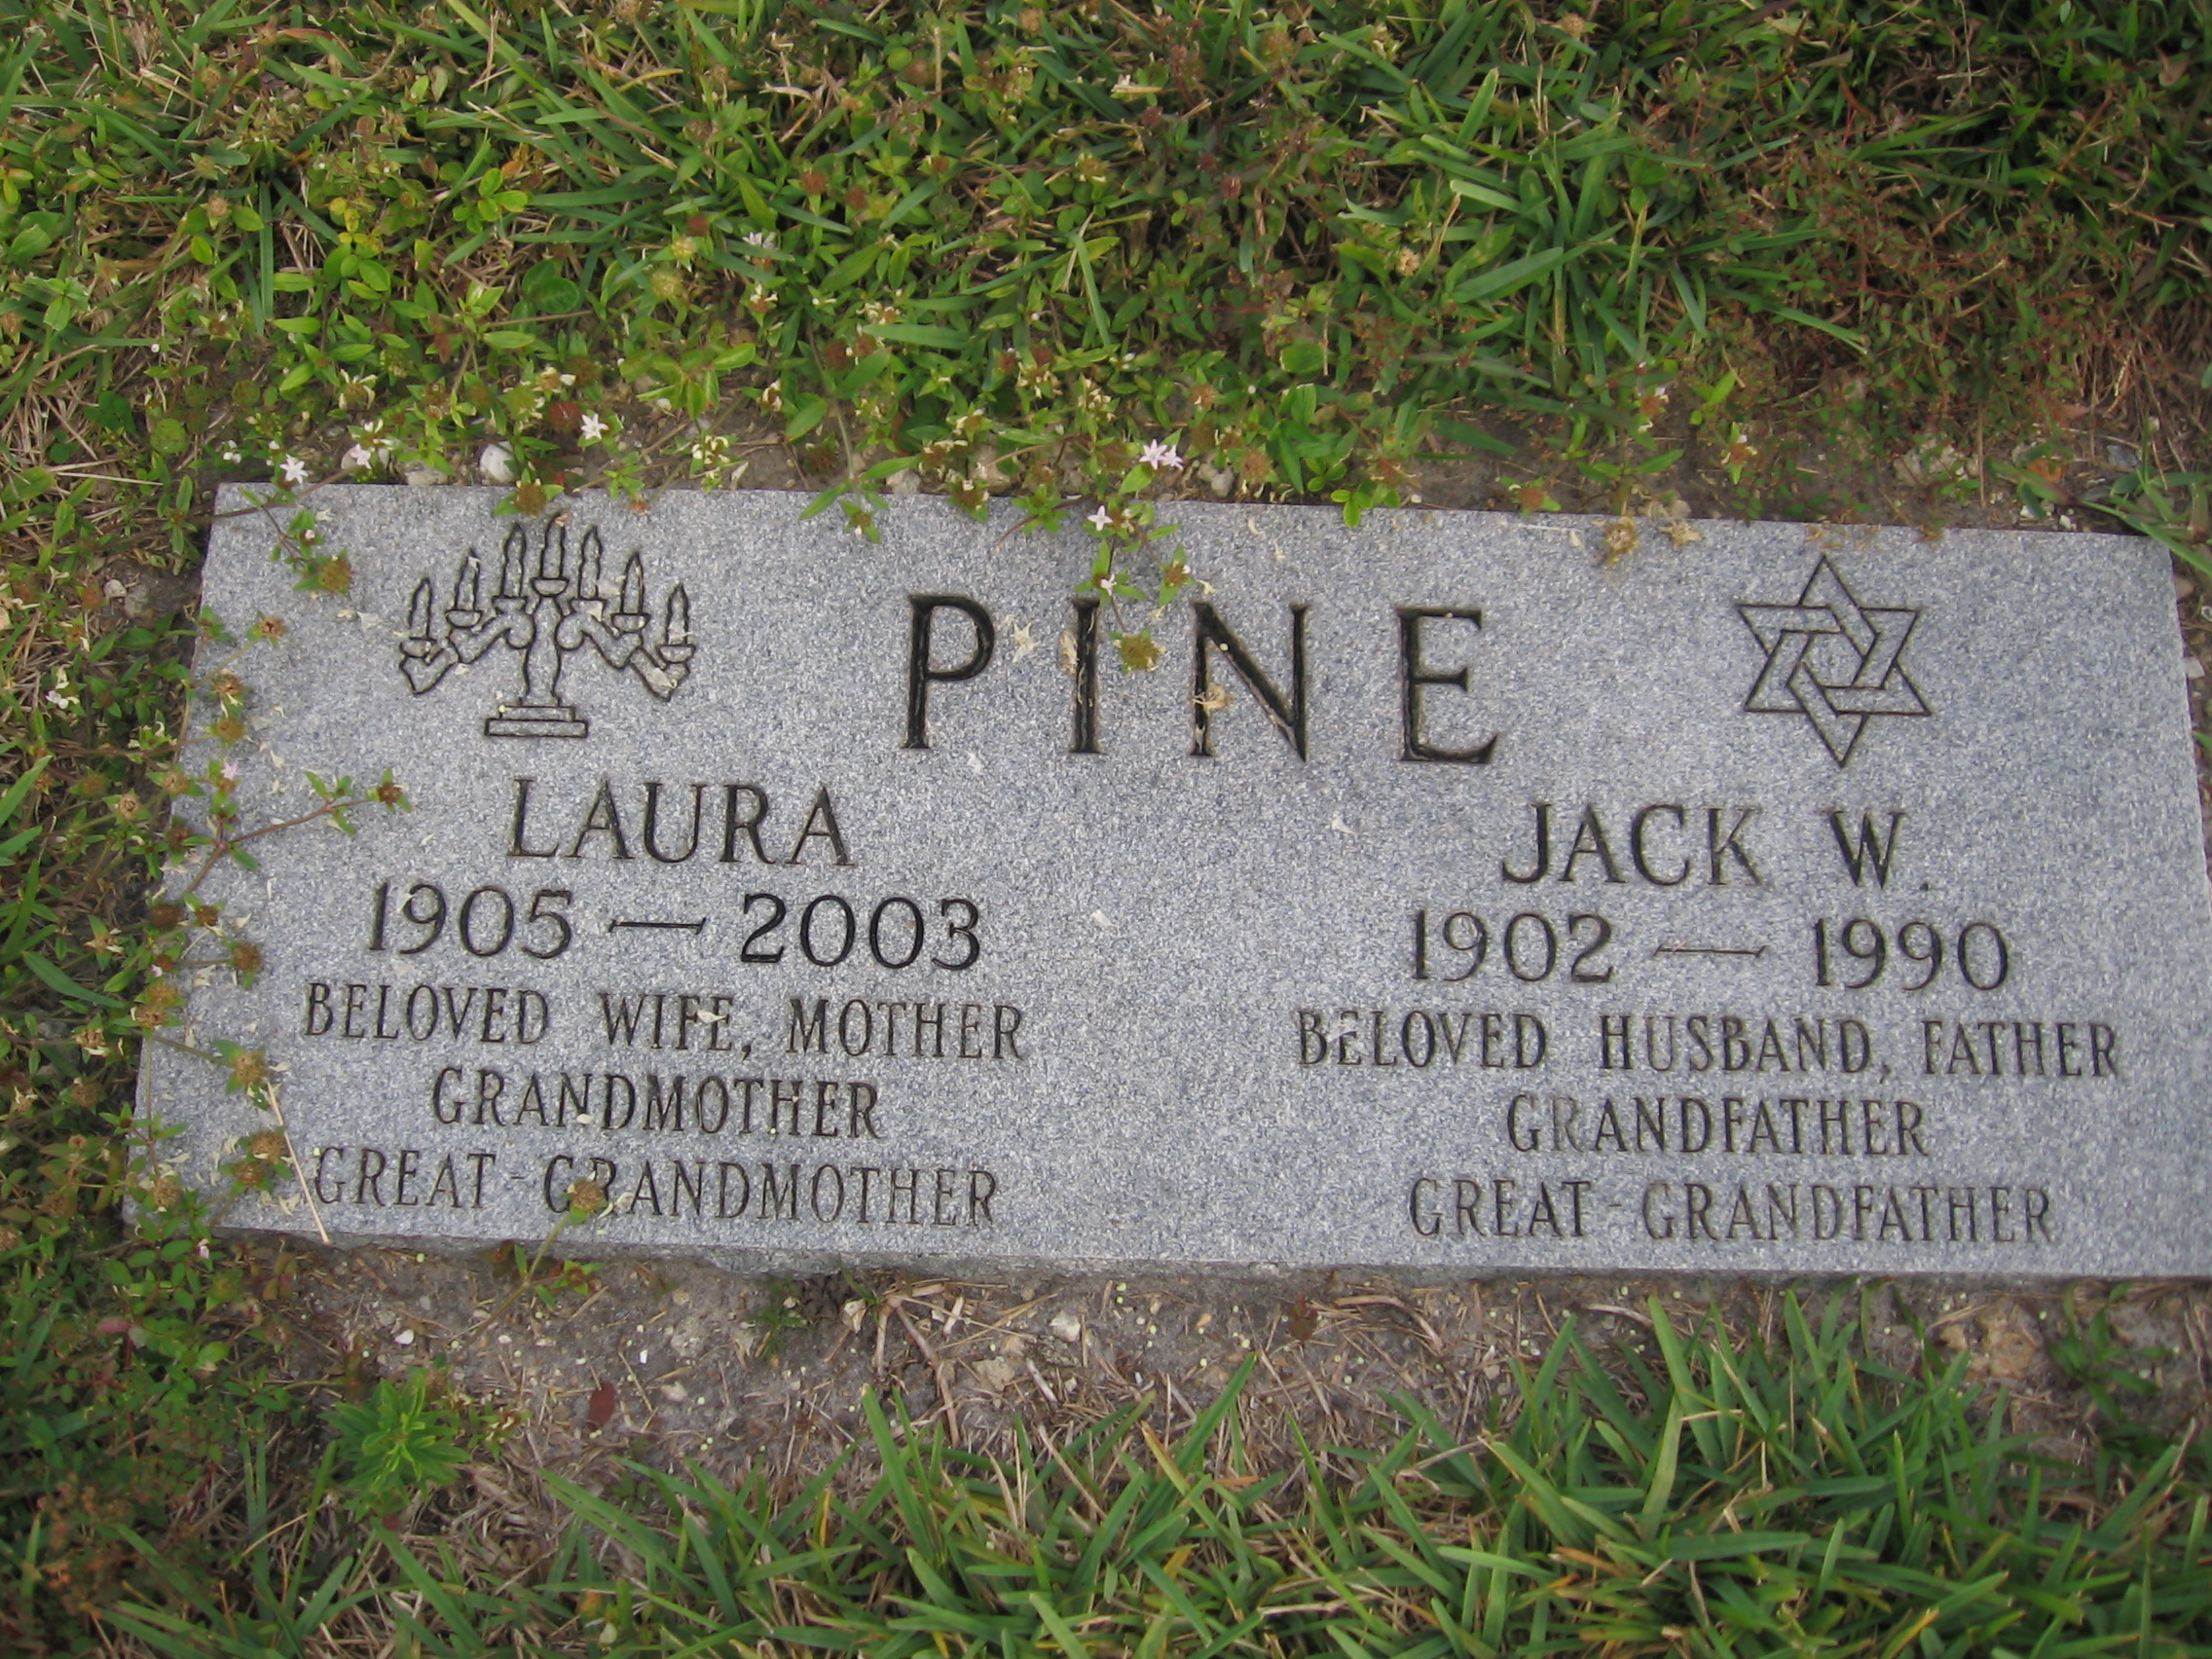 Laura Pine